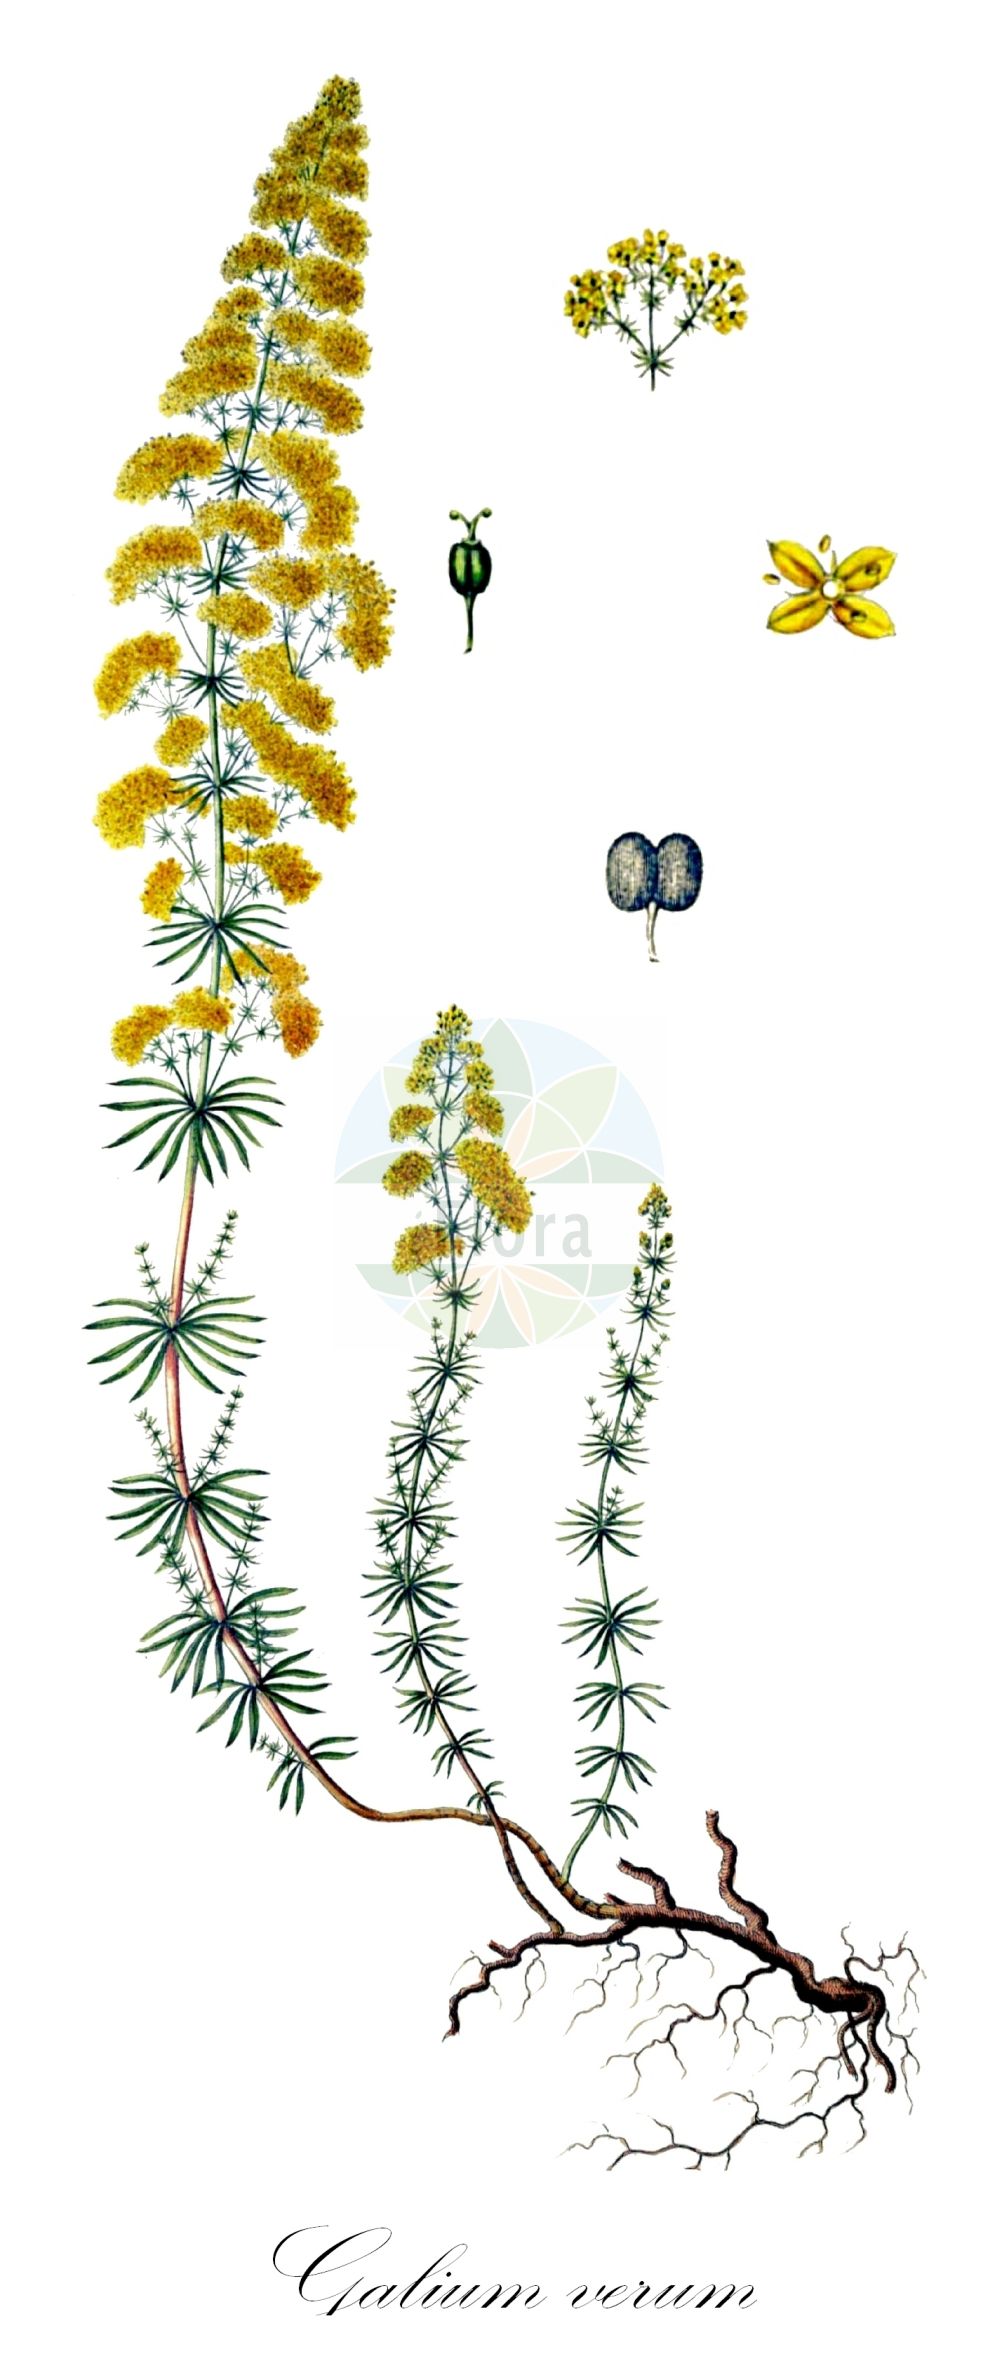 Historische Abbildung von Galium verum (Echtes Labkraut - Lady's Bedstraw). Das Bild zeigt Blatt, Bluete, Frucht und Same. ---- Historical Drawing of Galium verum (Echtes Labkraut - Lady's Bedstraw). The image is showing leaf, flower, fruit and seed.(Galium verum,Echtes Labkraut,Lady's Bedstraw,Galium verum,Echtes Labkraut,Gelbes Labkraut,Lady's Bedstraw,Galium,Labkraut,Bedstraw,Rubiaceae,Rötegewächse,Bedstraw family,Blatt,Bluete,Frucht,Same,leaf,flower,fruit,seed,Oeder (1761-1883))